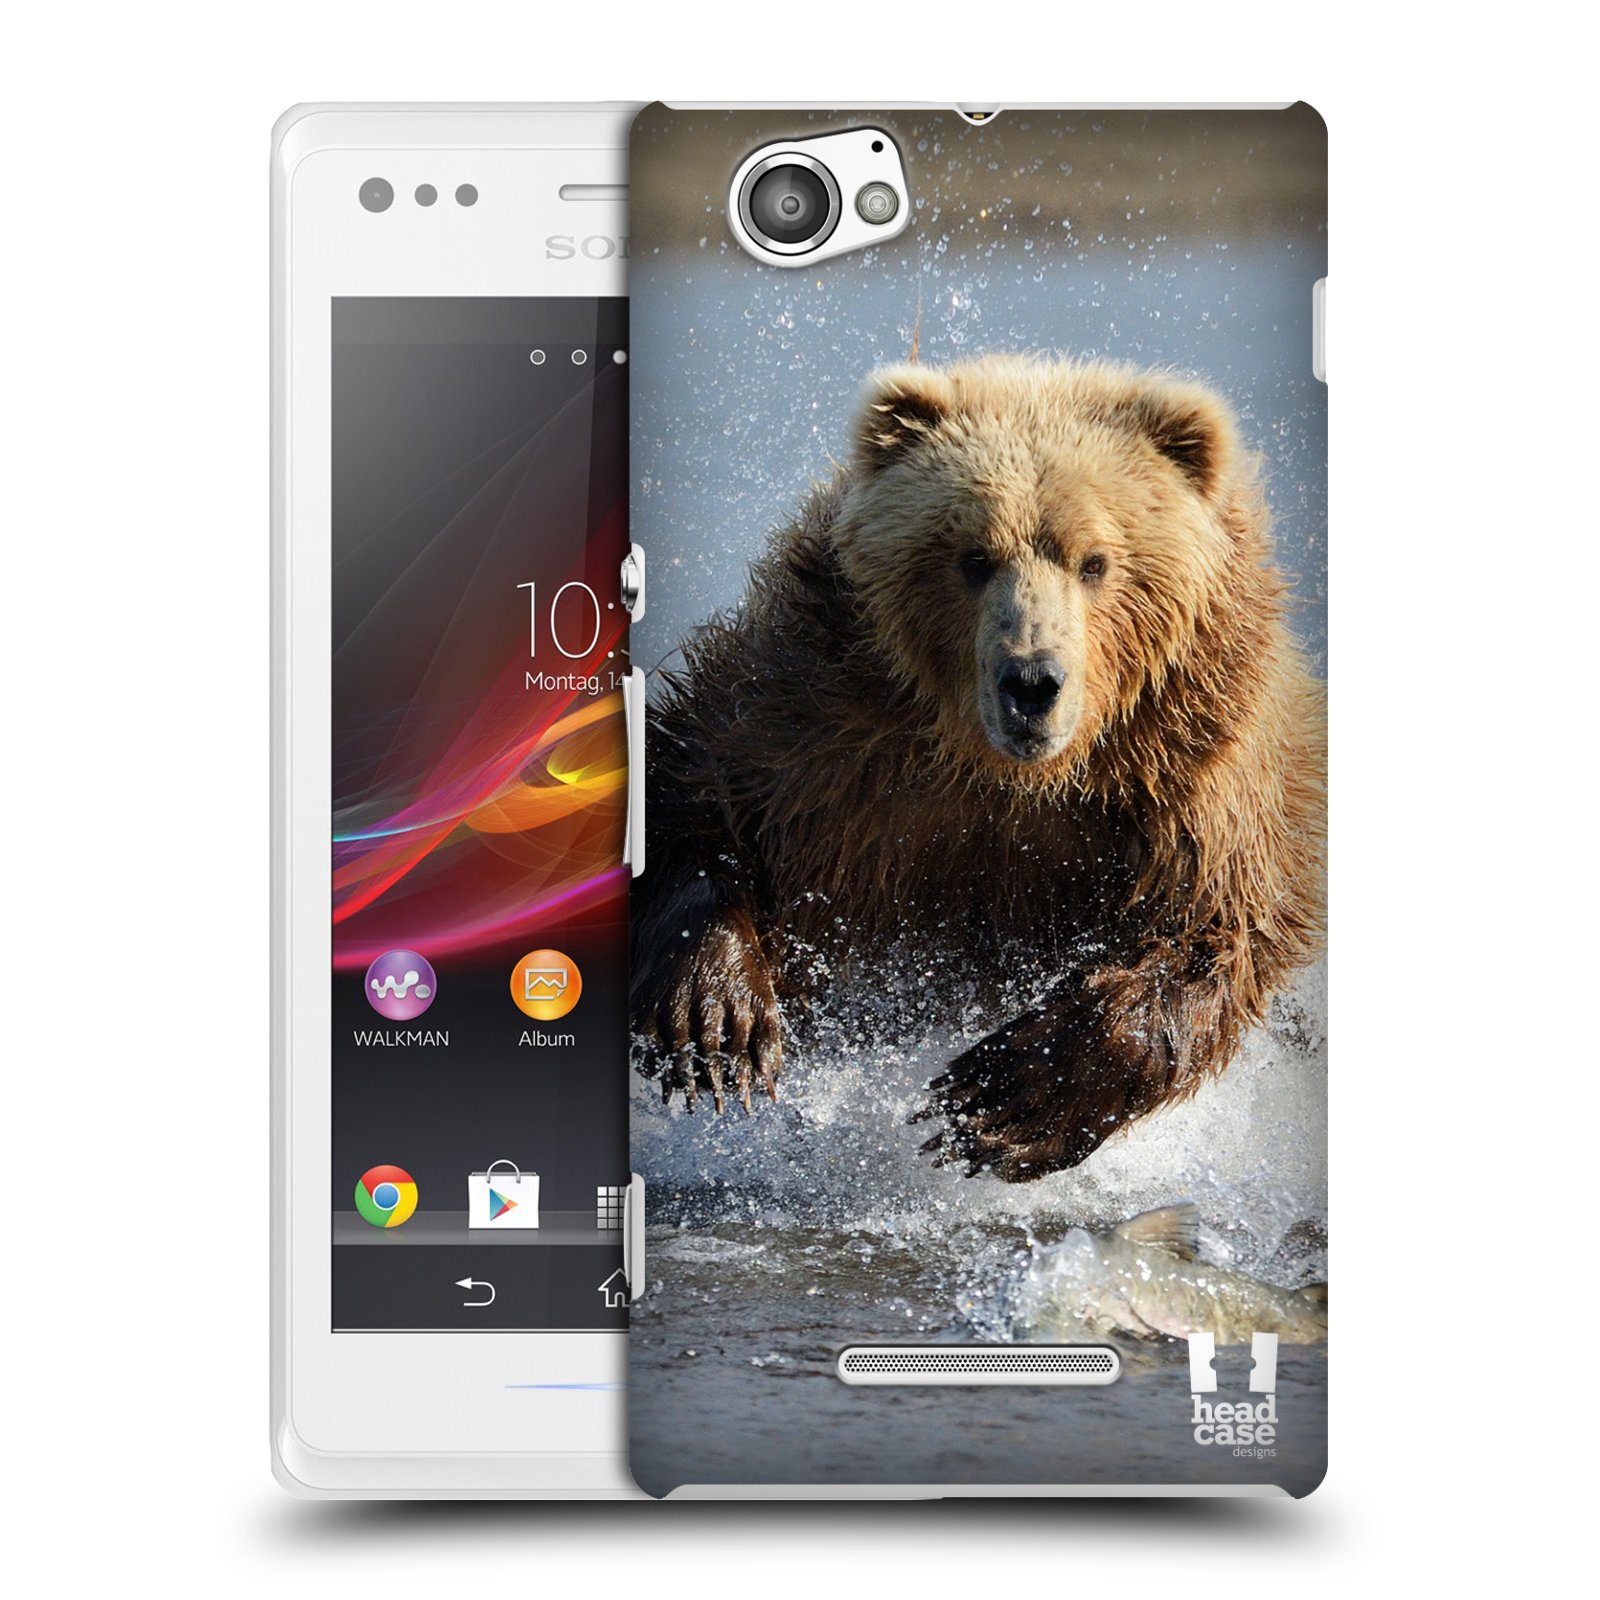 HEAD CASE plastový obal na mobil Sony Xperia M vzor Divočina, Divoký život a zvířata foto MEDVĚD GRIZZLY HŇEDÁ